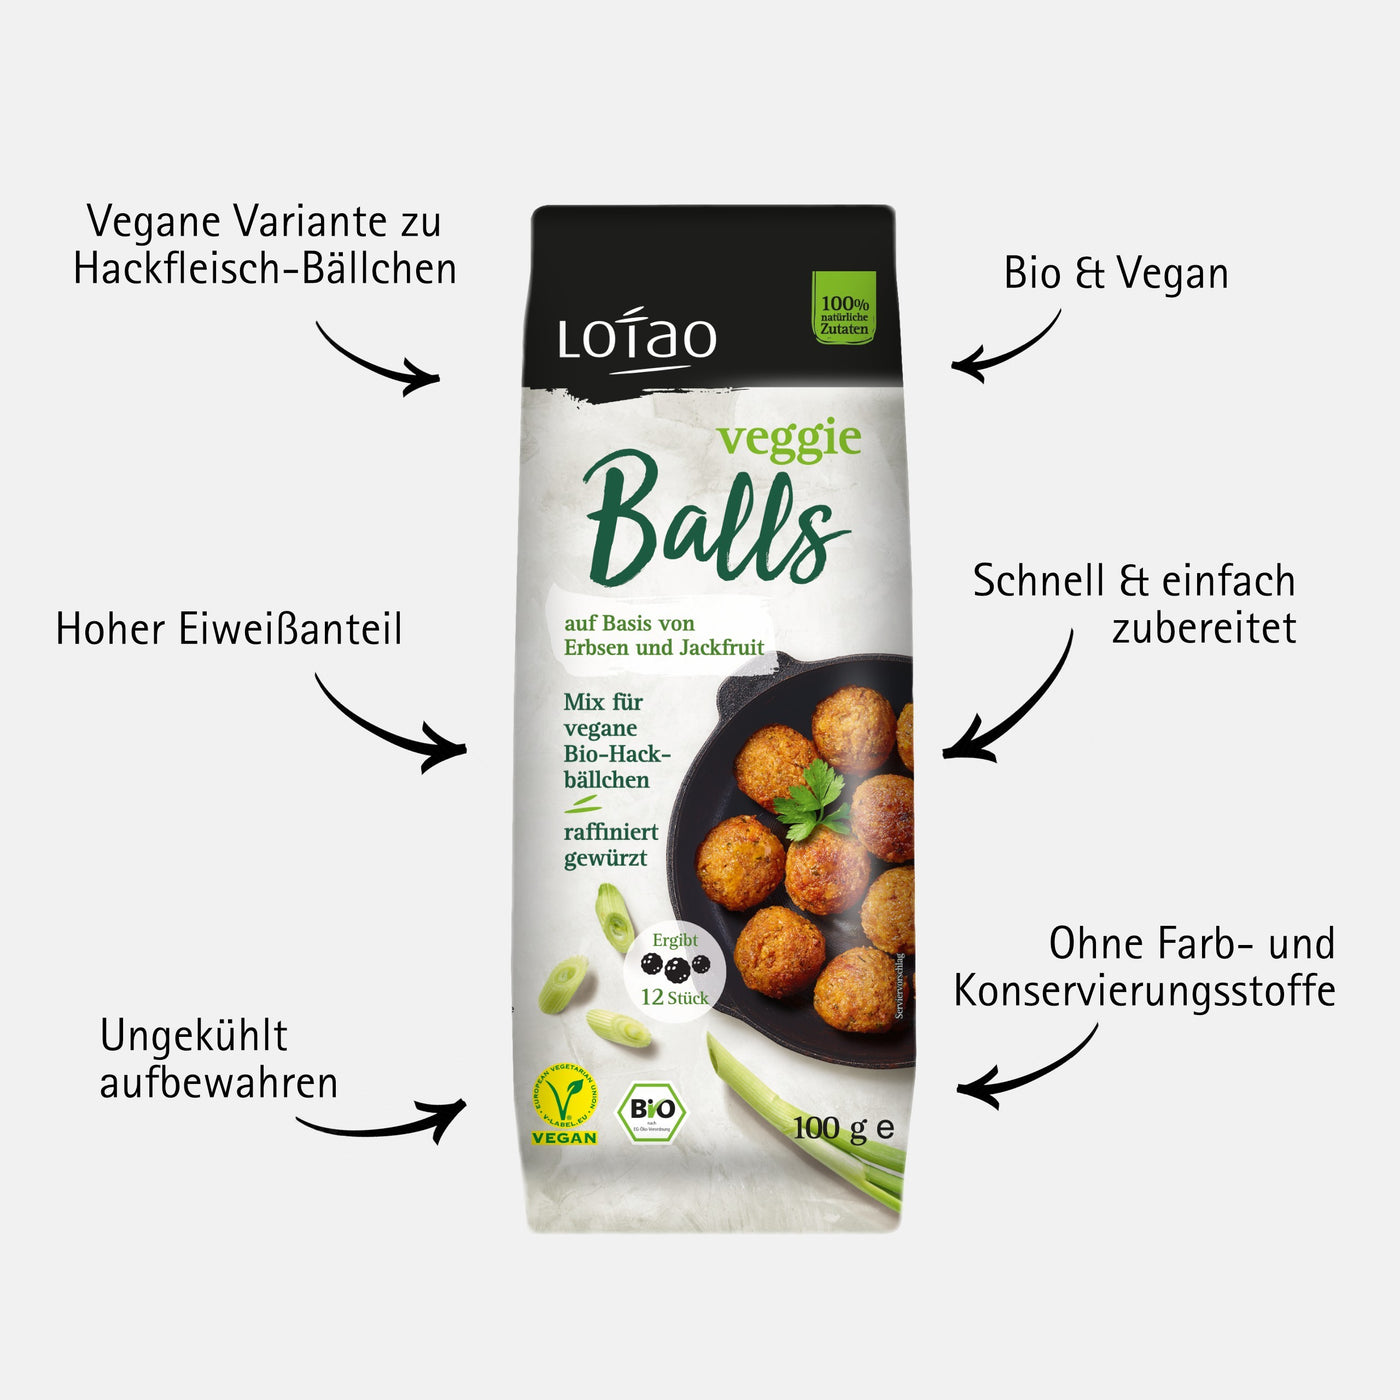 Lotao Veggie Balls Mix ist eine bio und vegane Variante zu Hackfleisch-Bällchen mit hohem Eiweißanteil, der schnell und einfach zubereitet wird, ungekühlt aufbewahrt werden kann und keine Farb- oder Konservierungsstoffe enthält